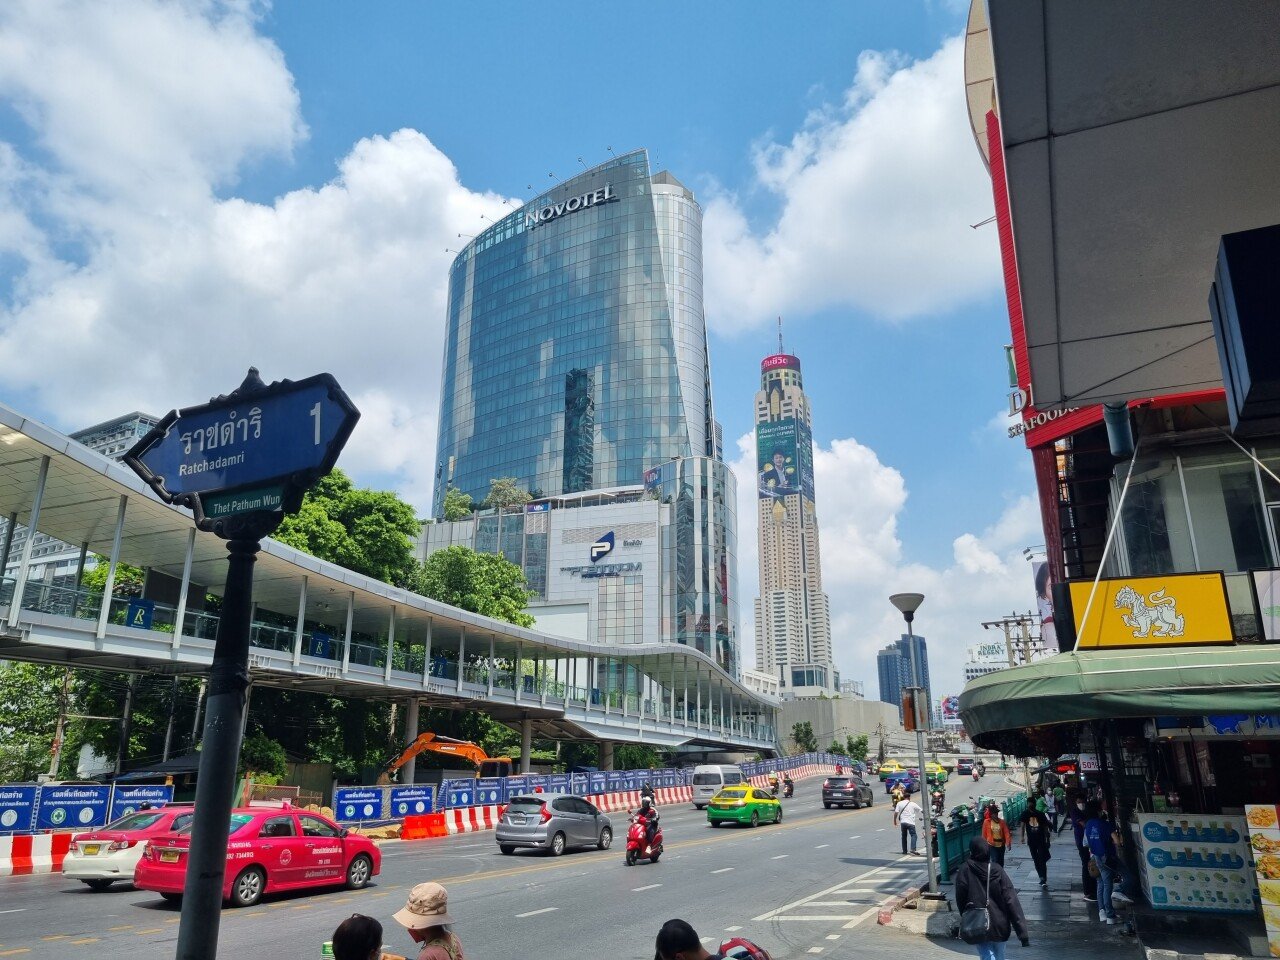 20220317_113606.jpg (ㅅㅇ) 코로나시국 방콕여행 모음